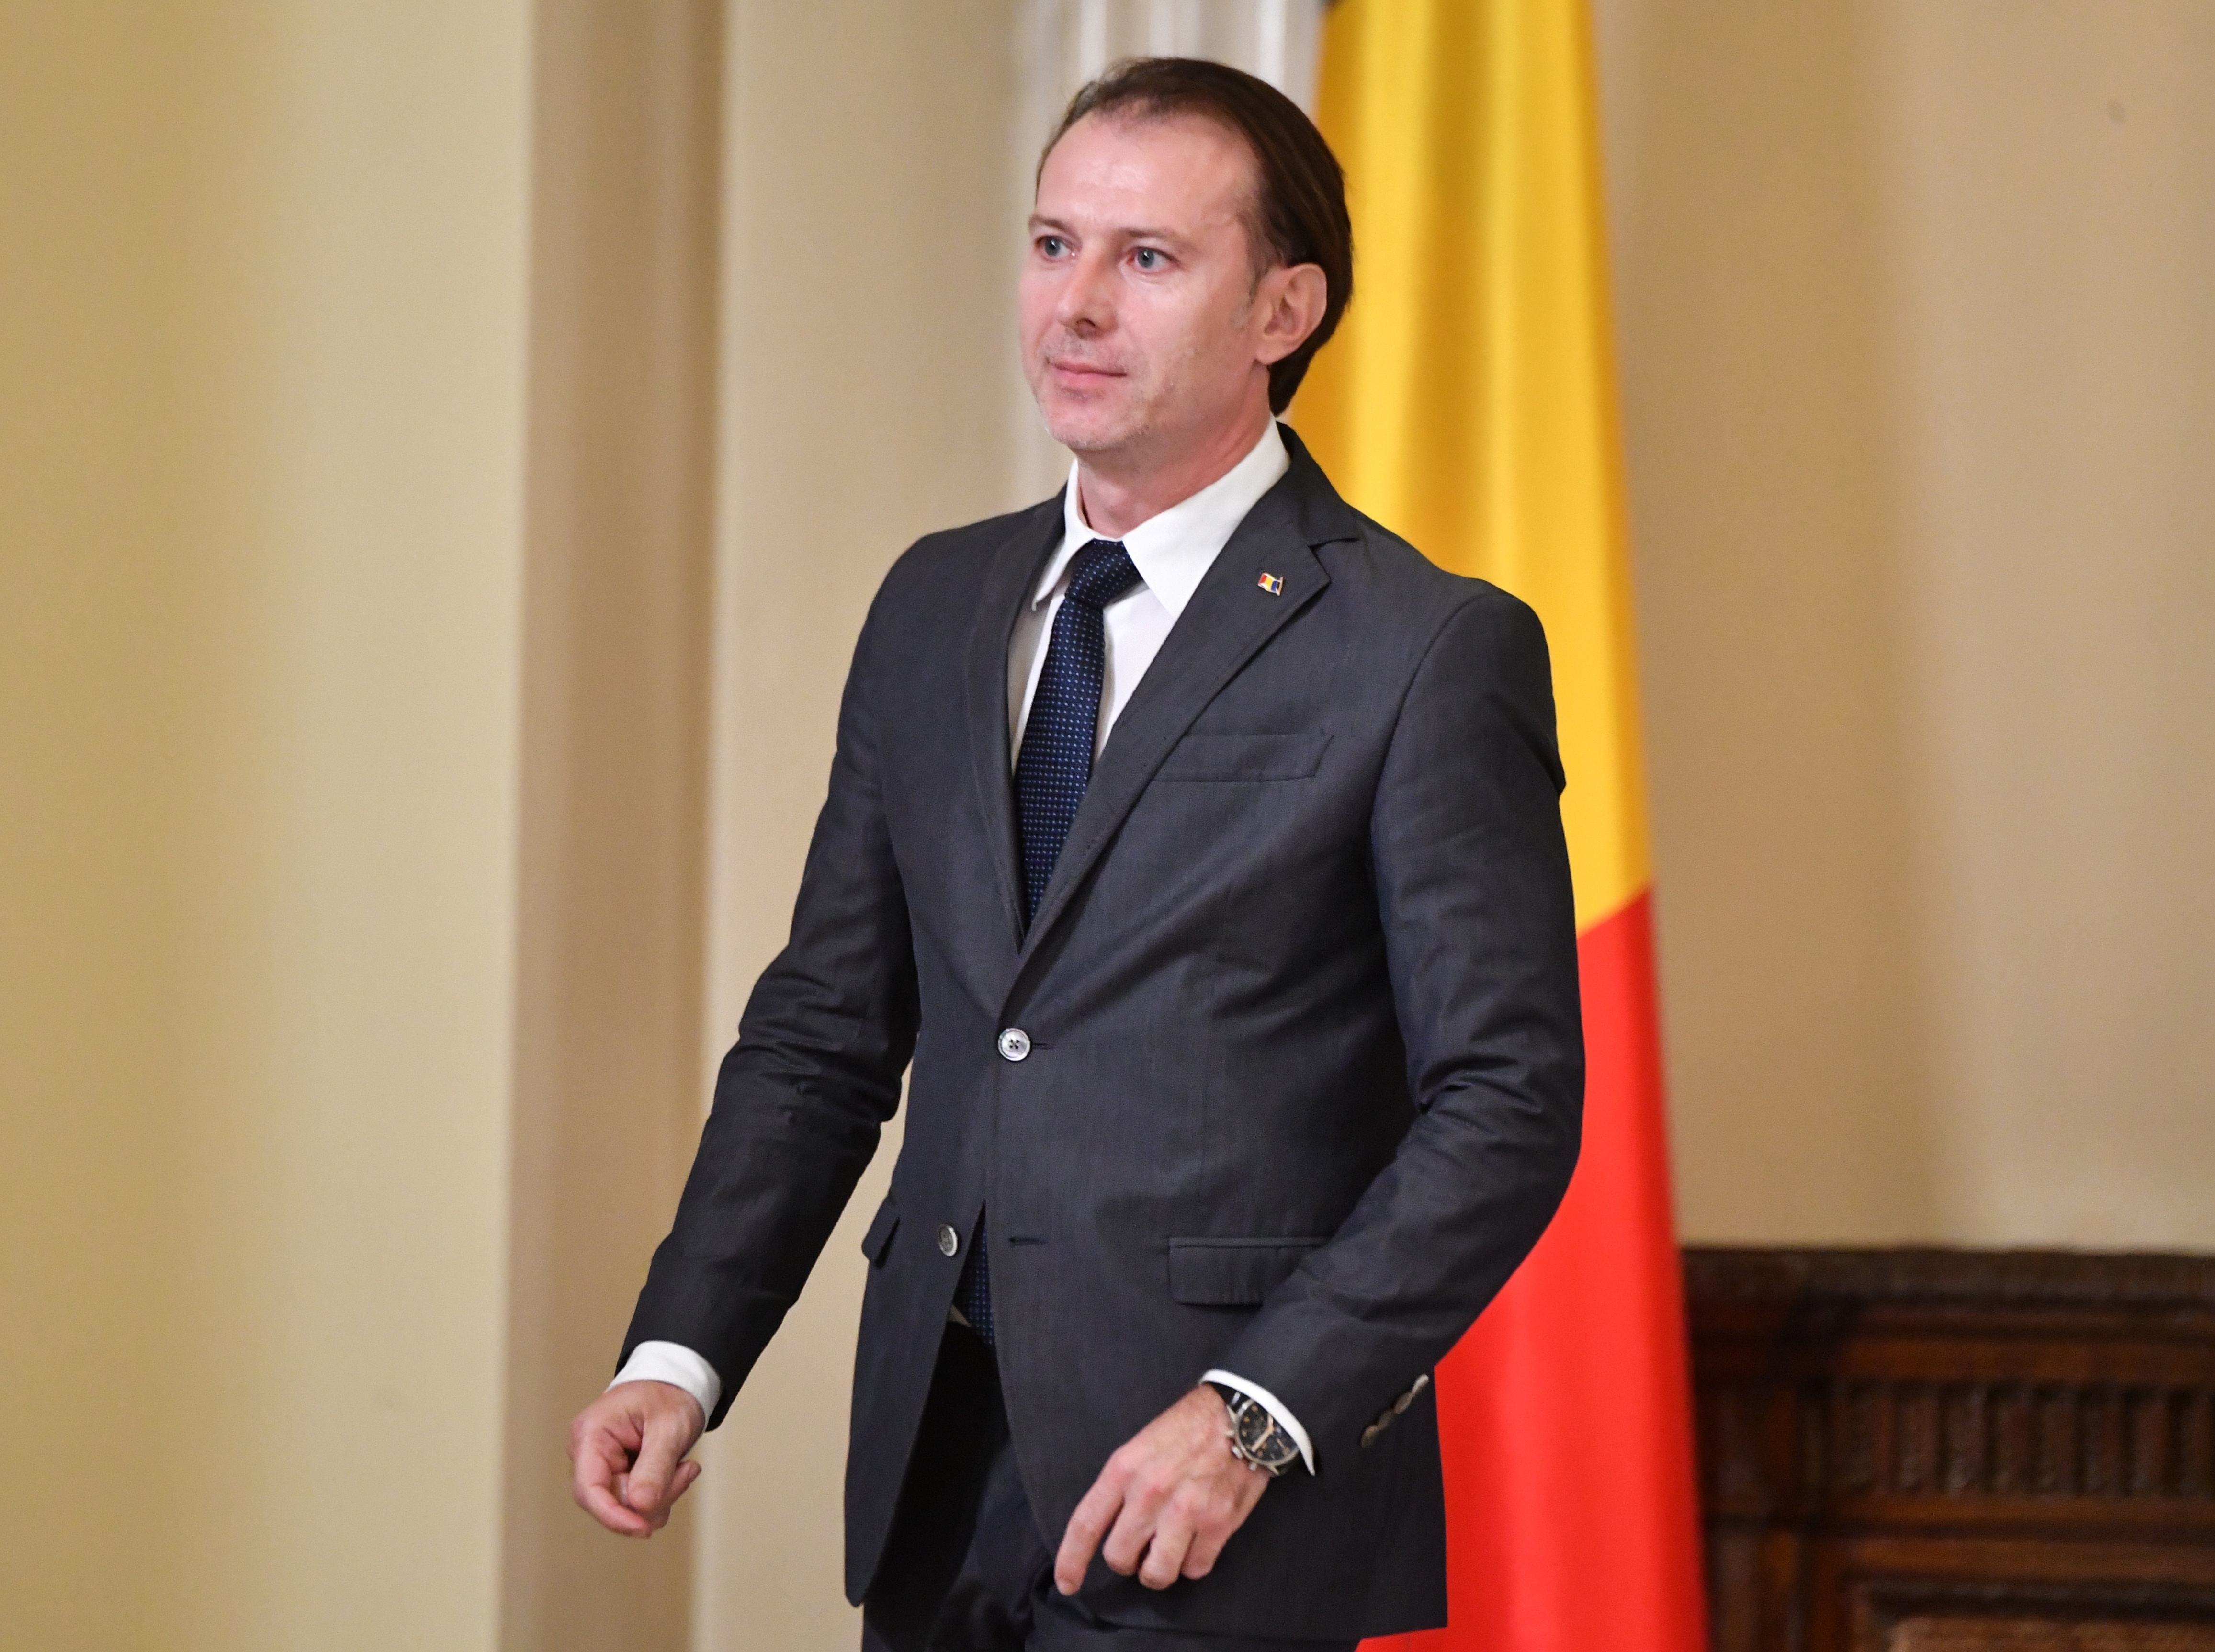 A román miniszterelnök júniusra tervezi a nyitást